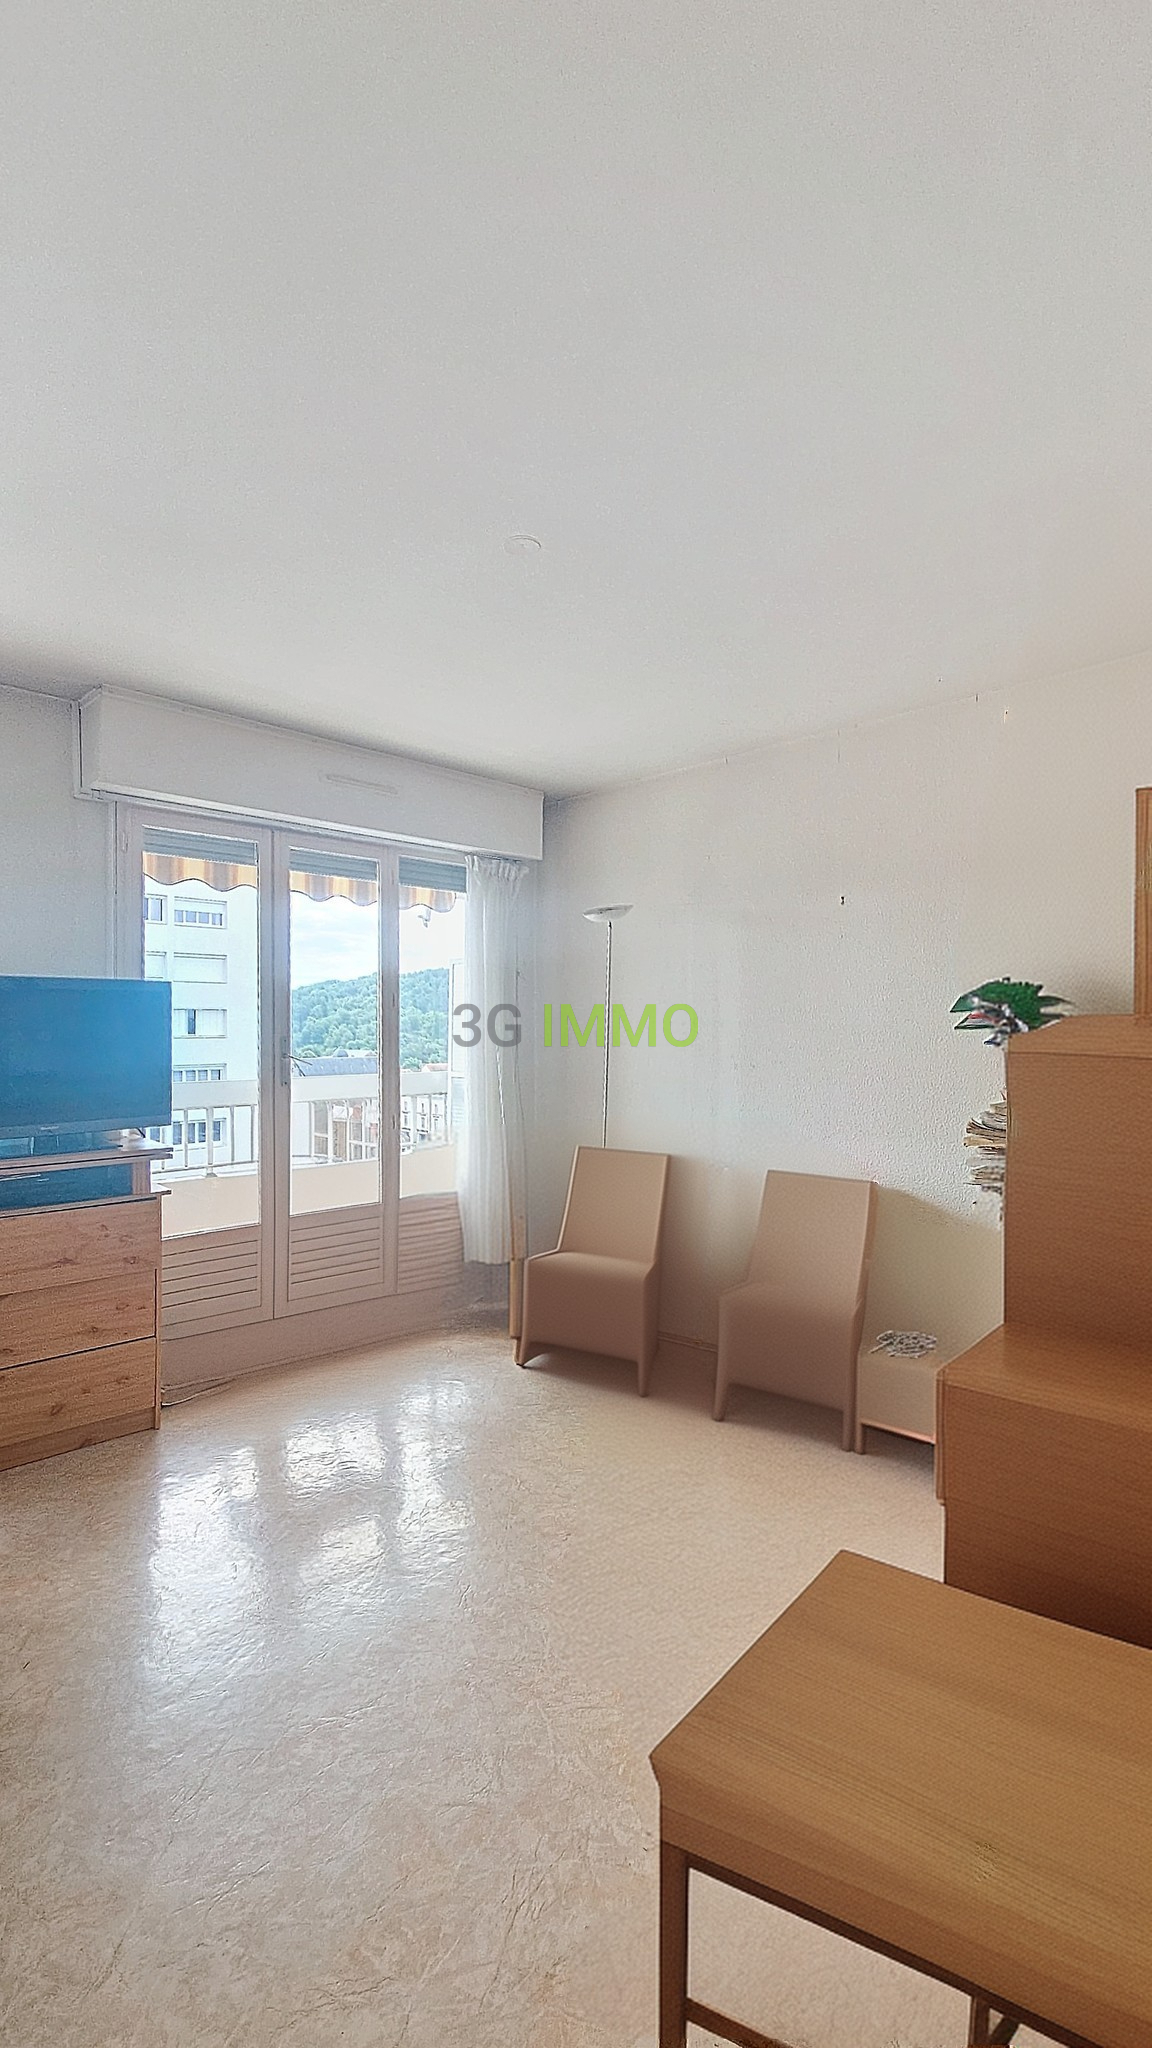 Photo mobile 2 | Cusset (03300) | Appartement de 29.00 m² | Type 1 | 42000 € |  Référence: 191444VP